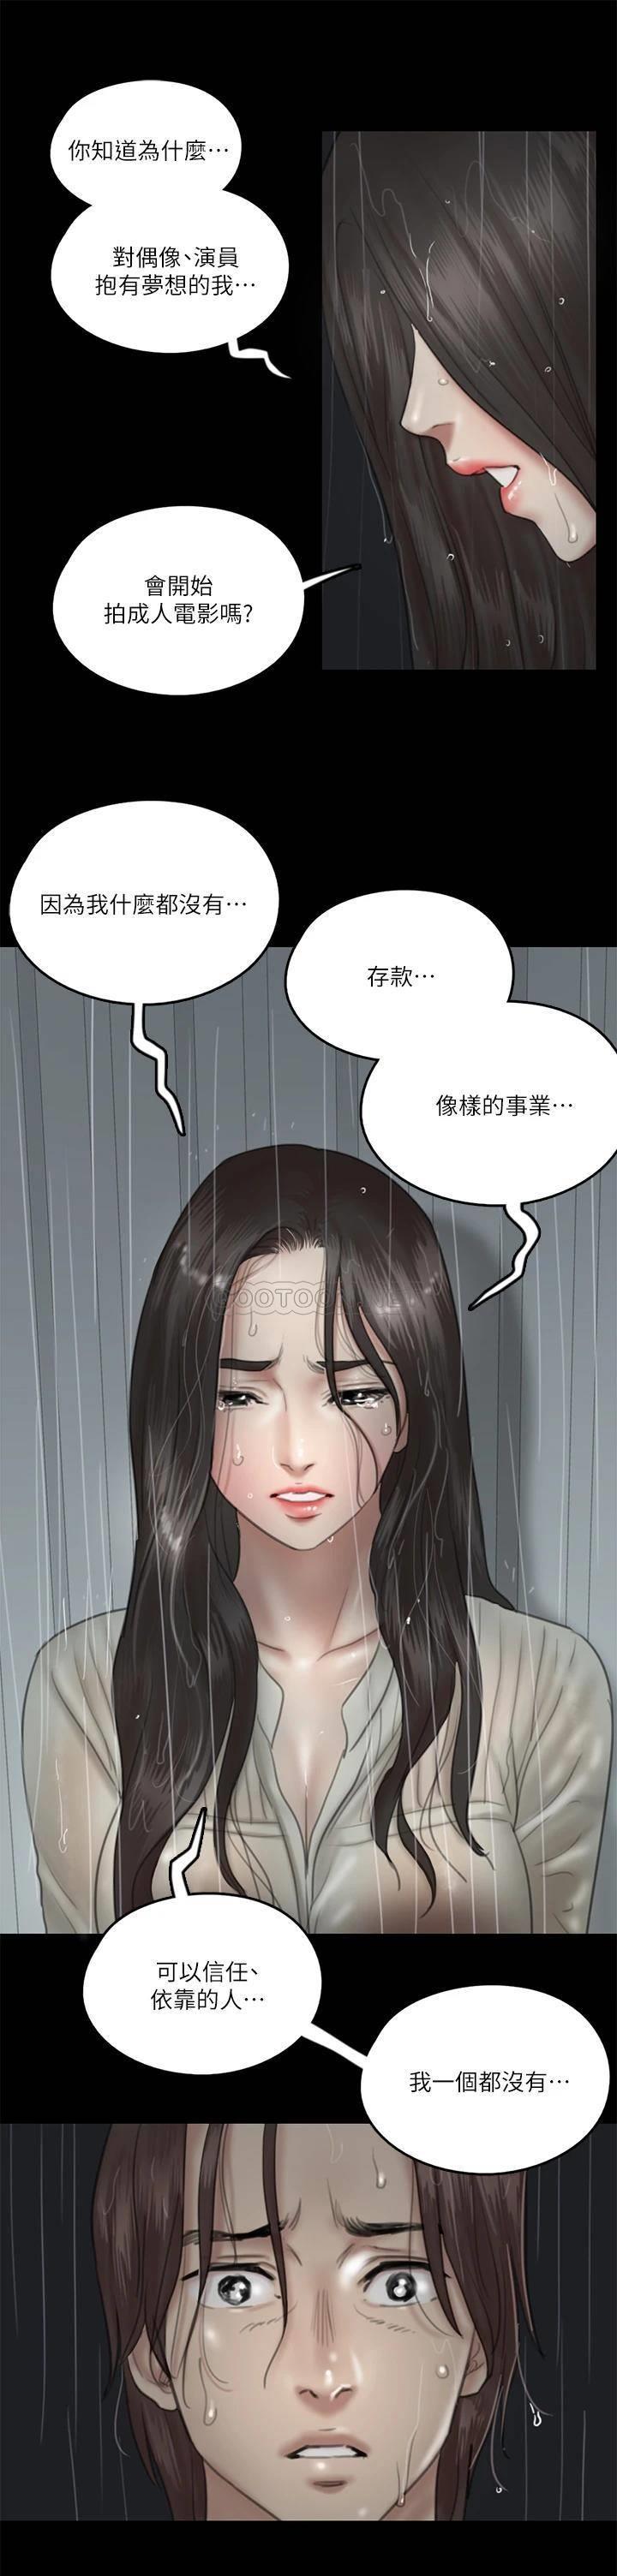 韩国污漫画 偶像女優 第20话用真心填满干涸的体内 27